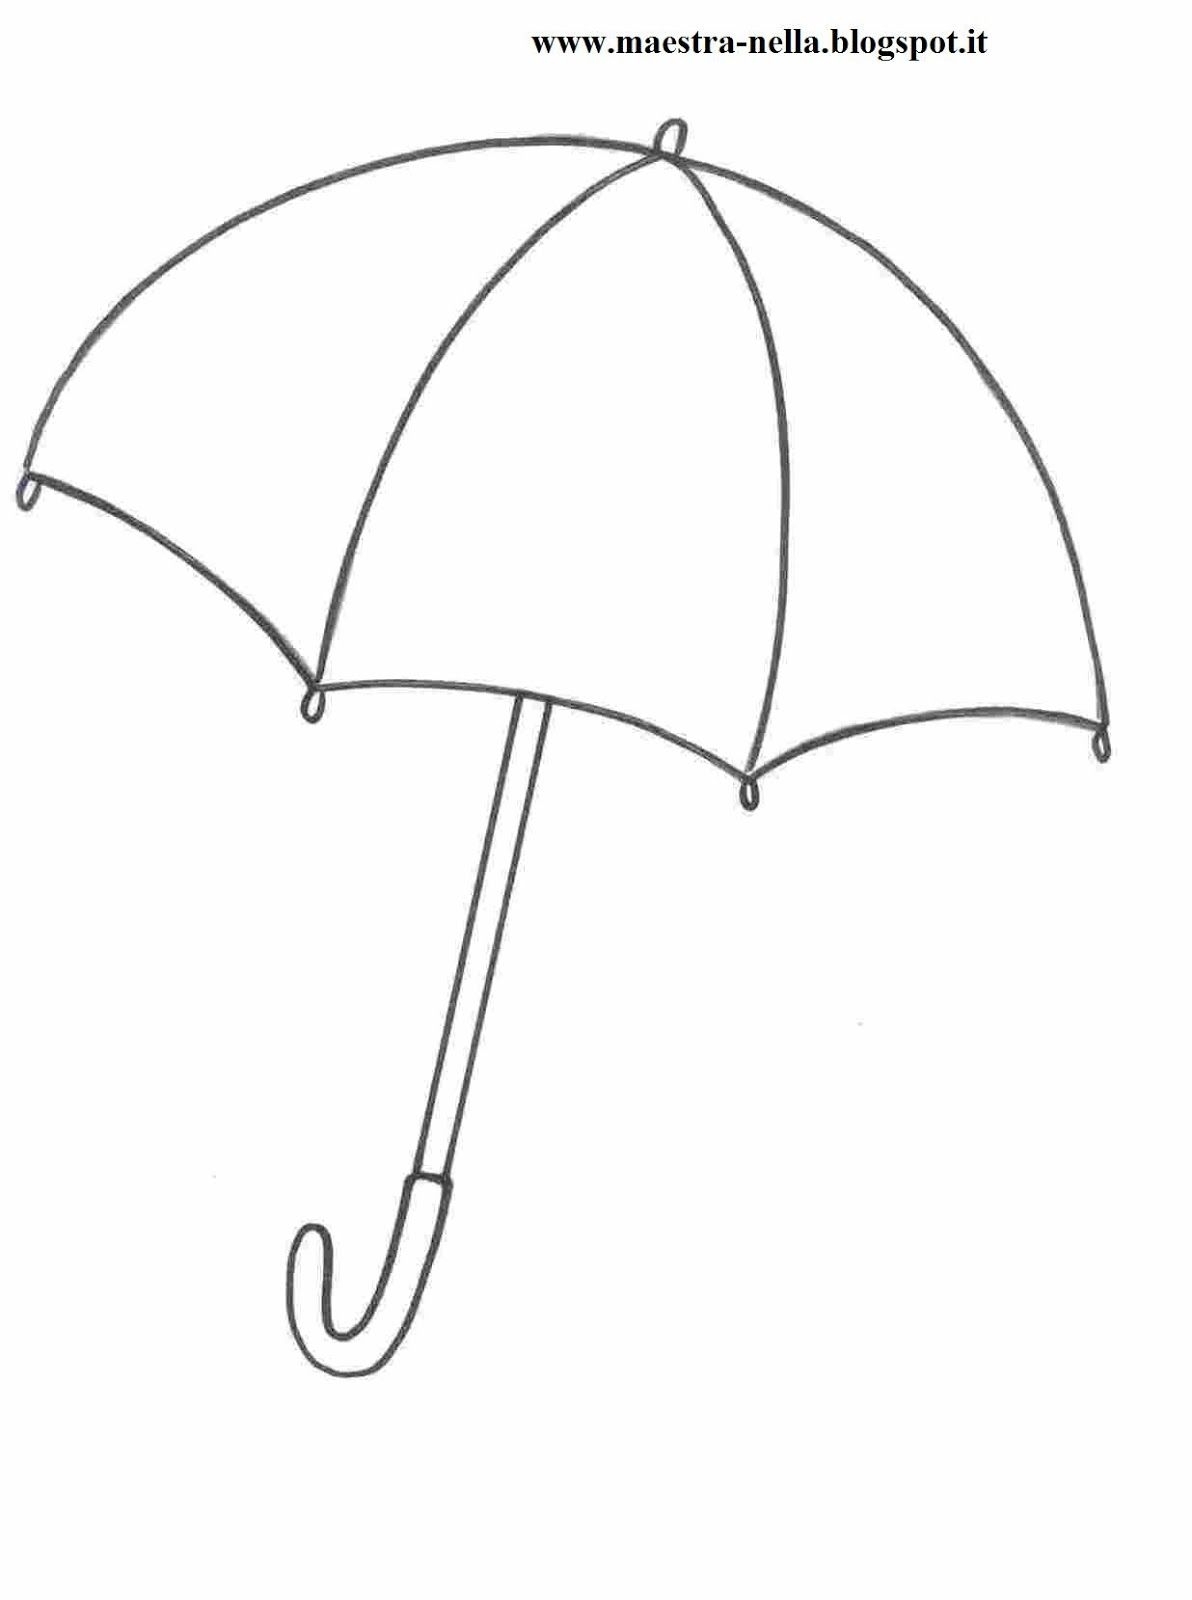 Зонтик младшая группа